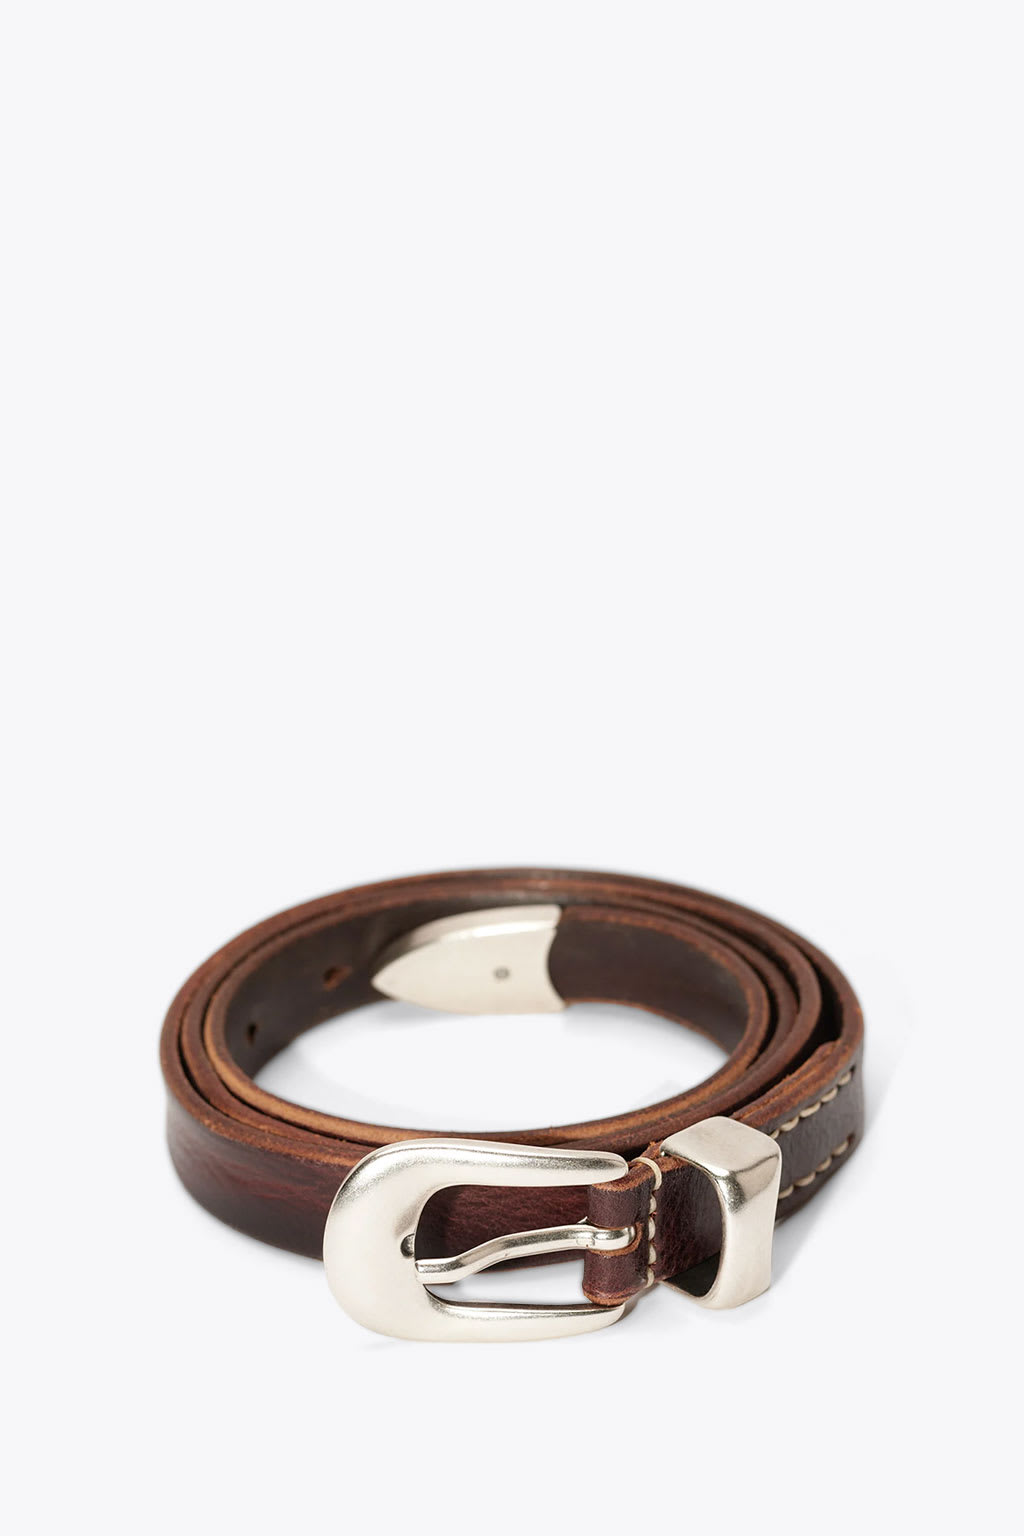 2 Cm Belt Brown leather belt - 2 cm belt